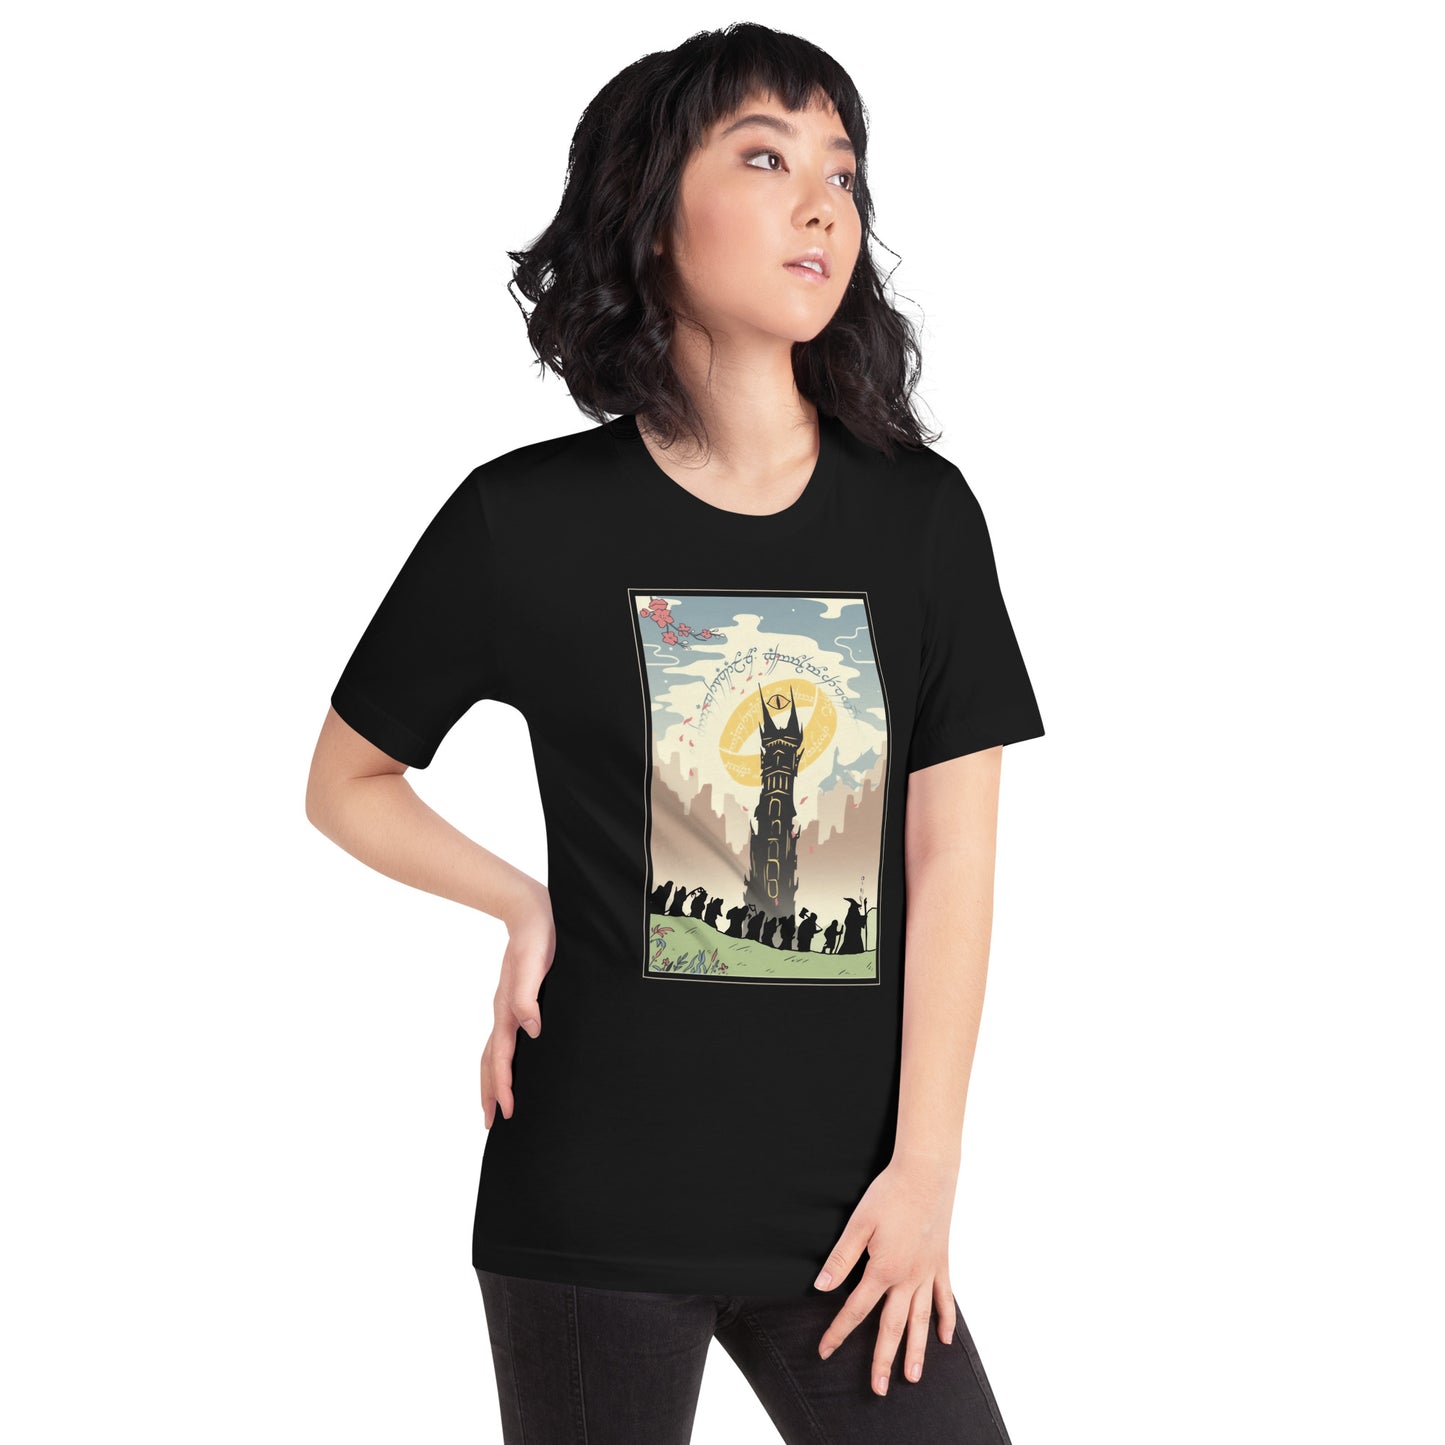 Camiseta The land of the Hobbits!, Disponible en la mejor tienda online para comprar tu merch favorita, la mejor Calidad, compra Ahora en Superstar! 